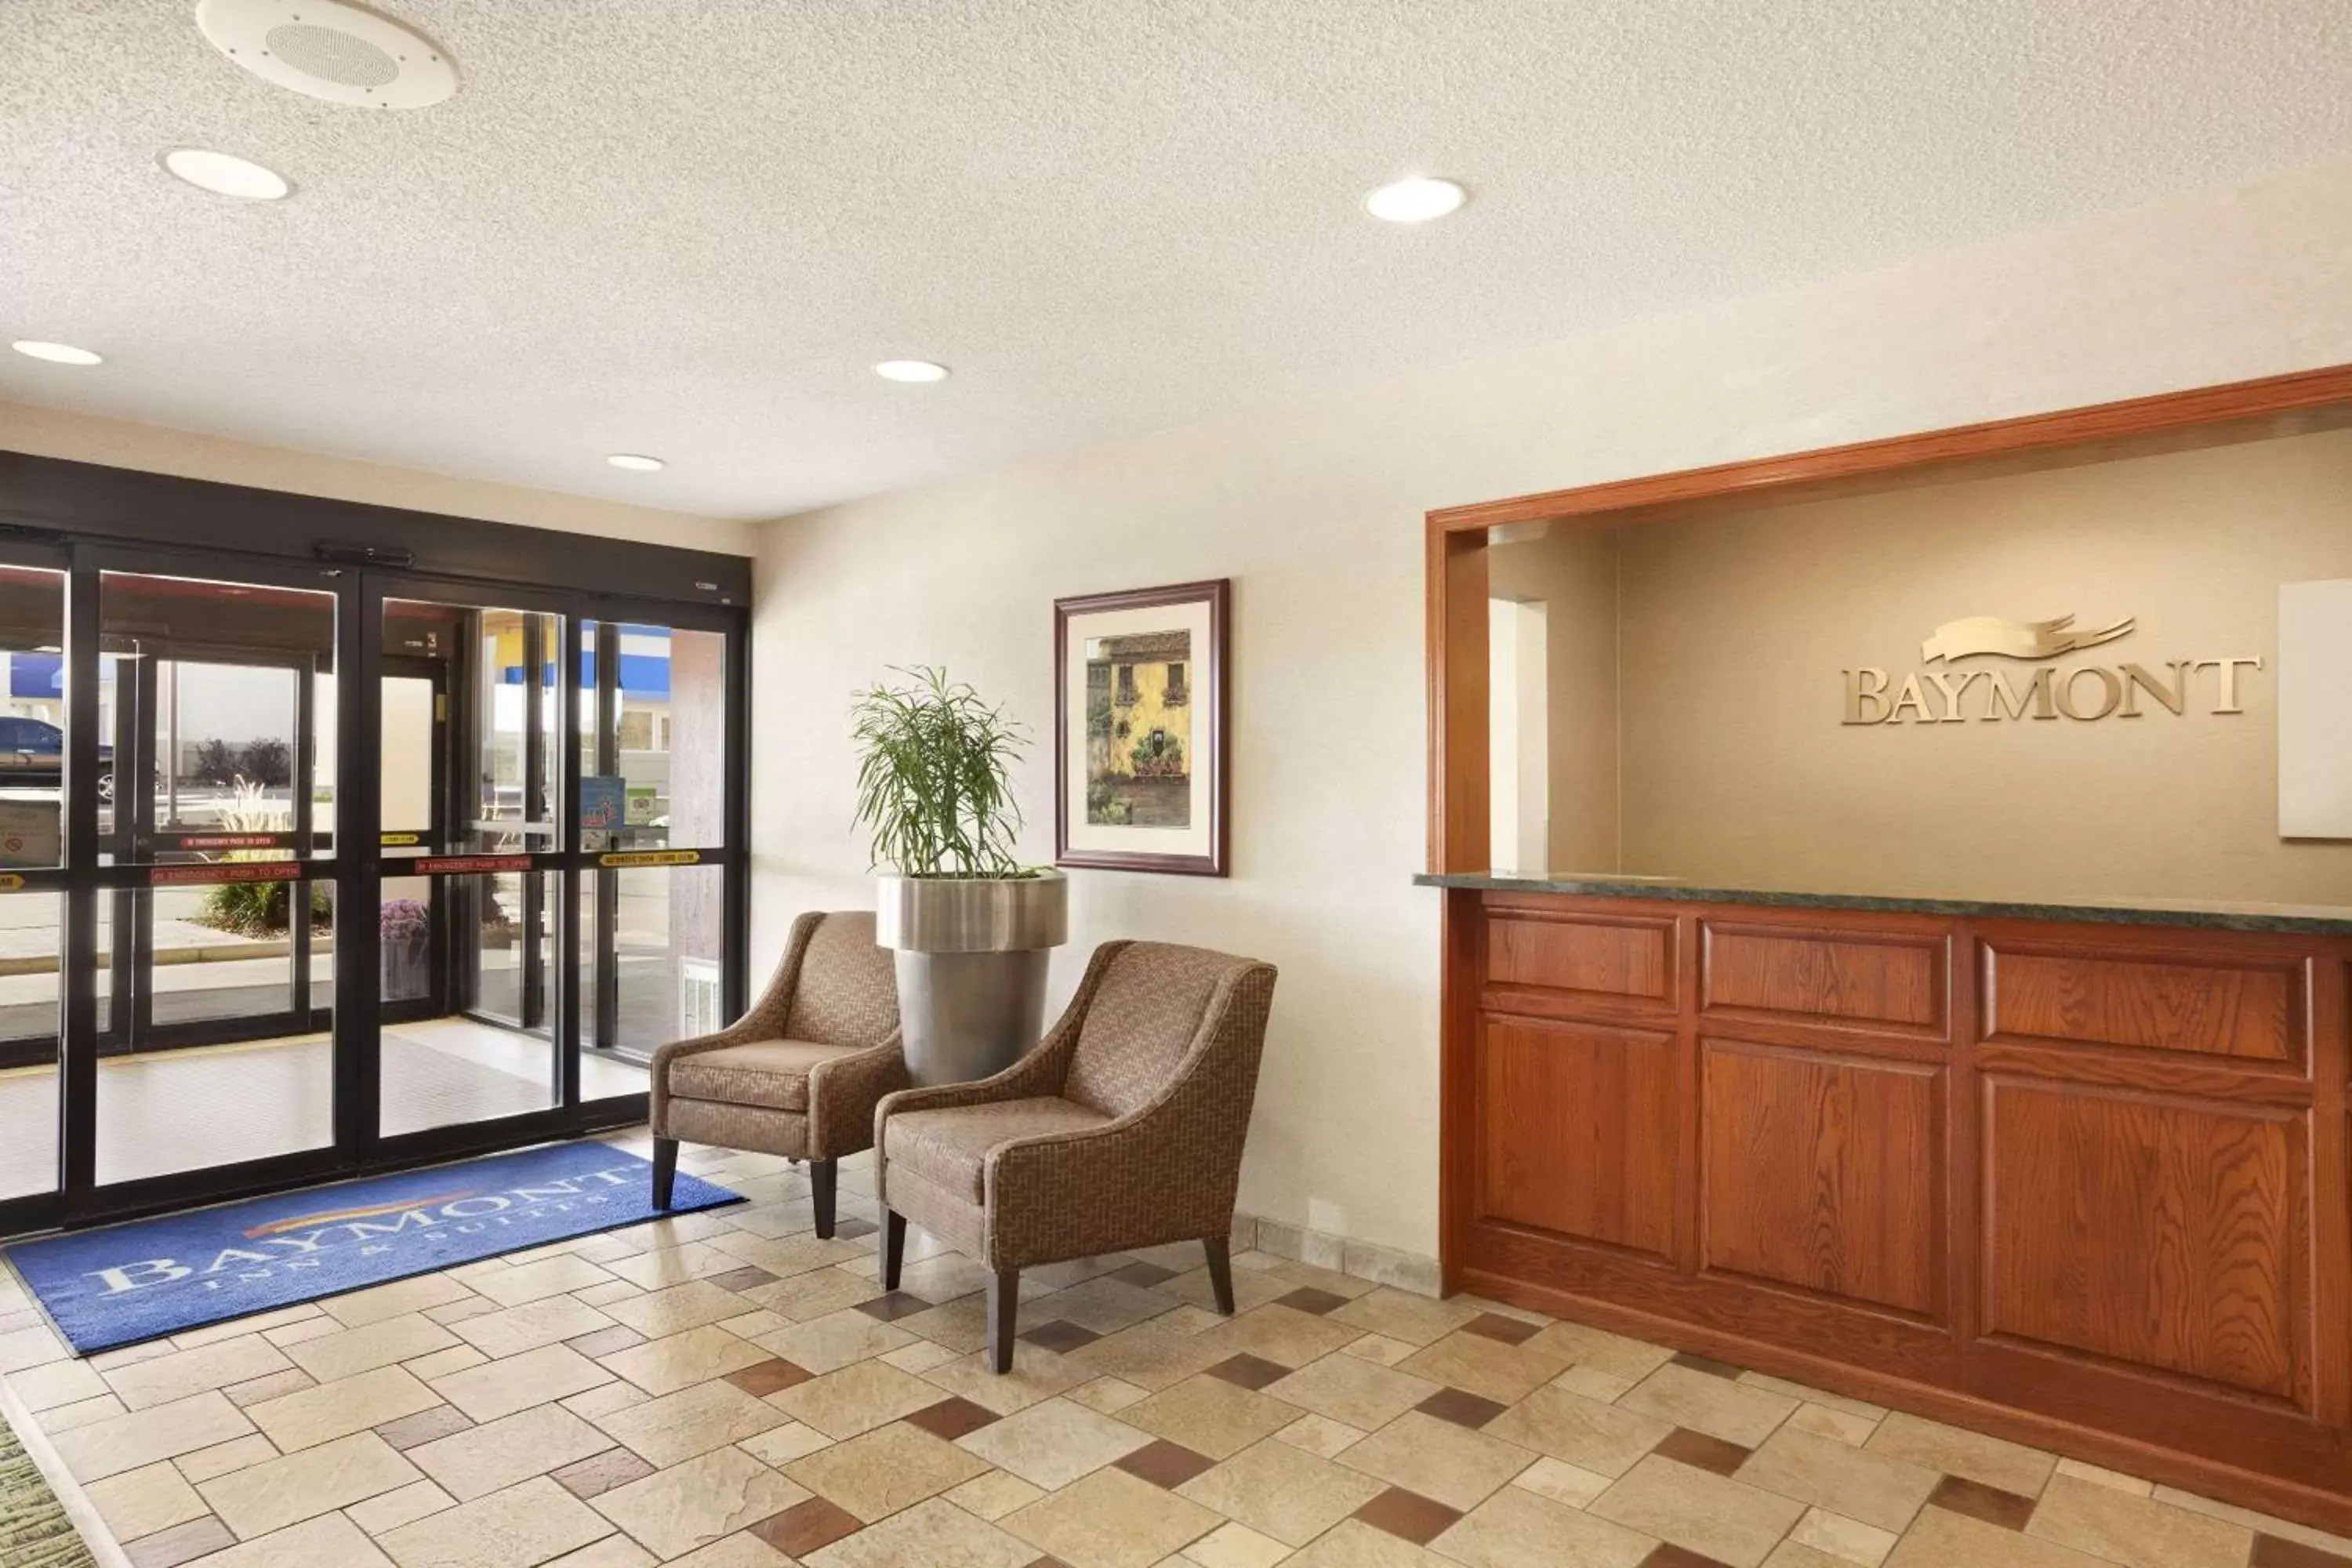 Lobby or reception, Lobby/Reception in Baymont by Wyndham Sioux Falls